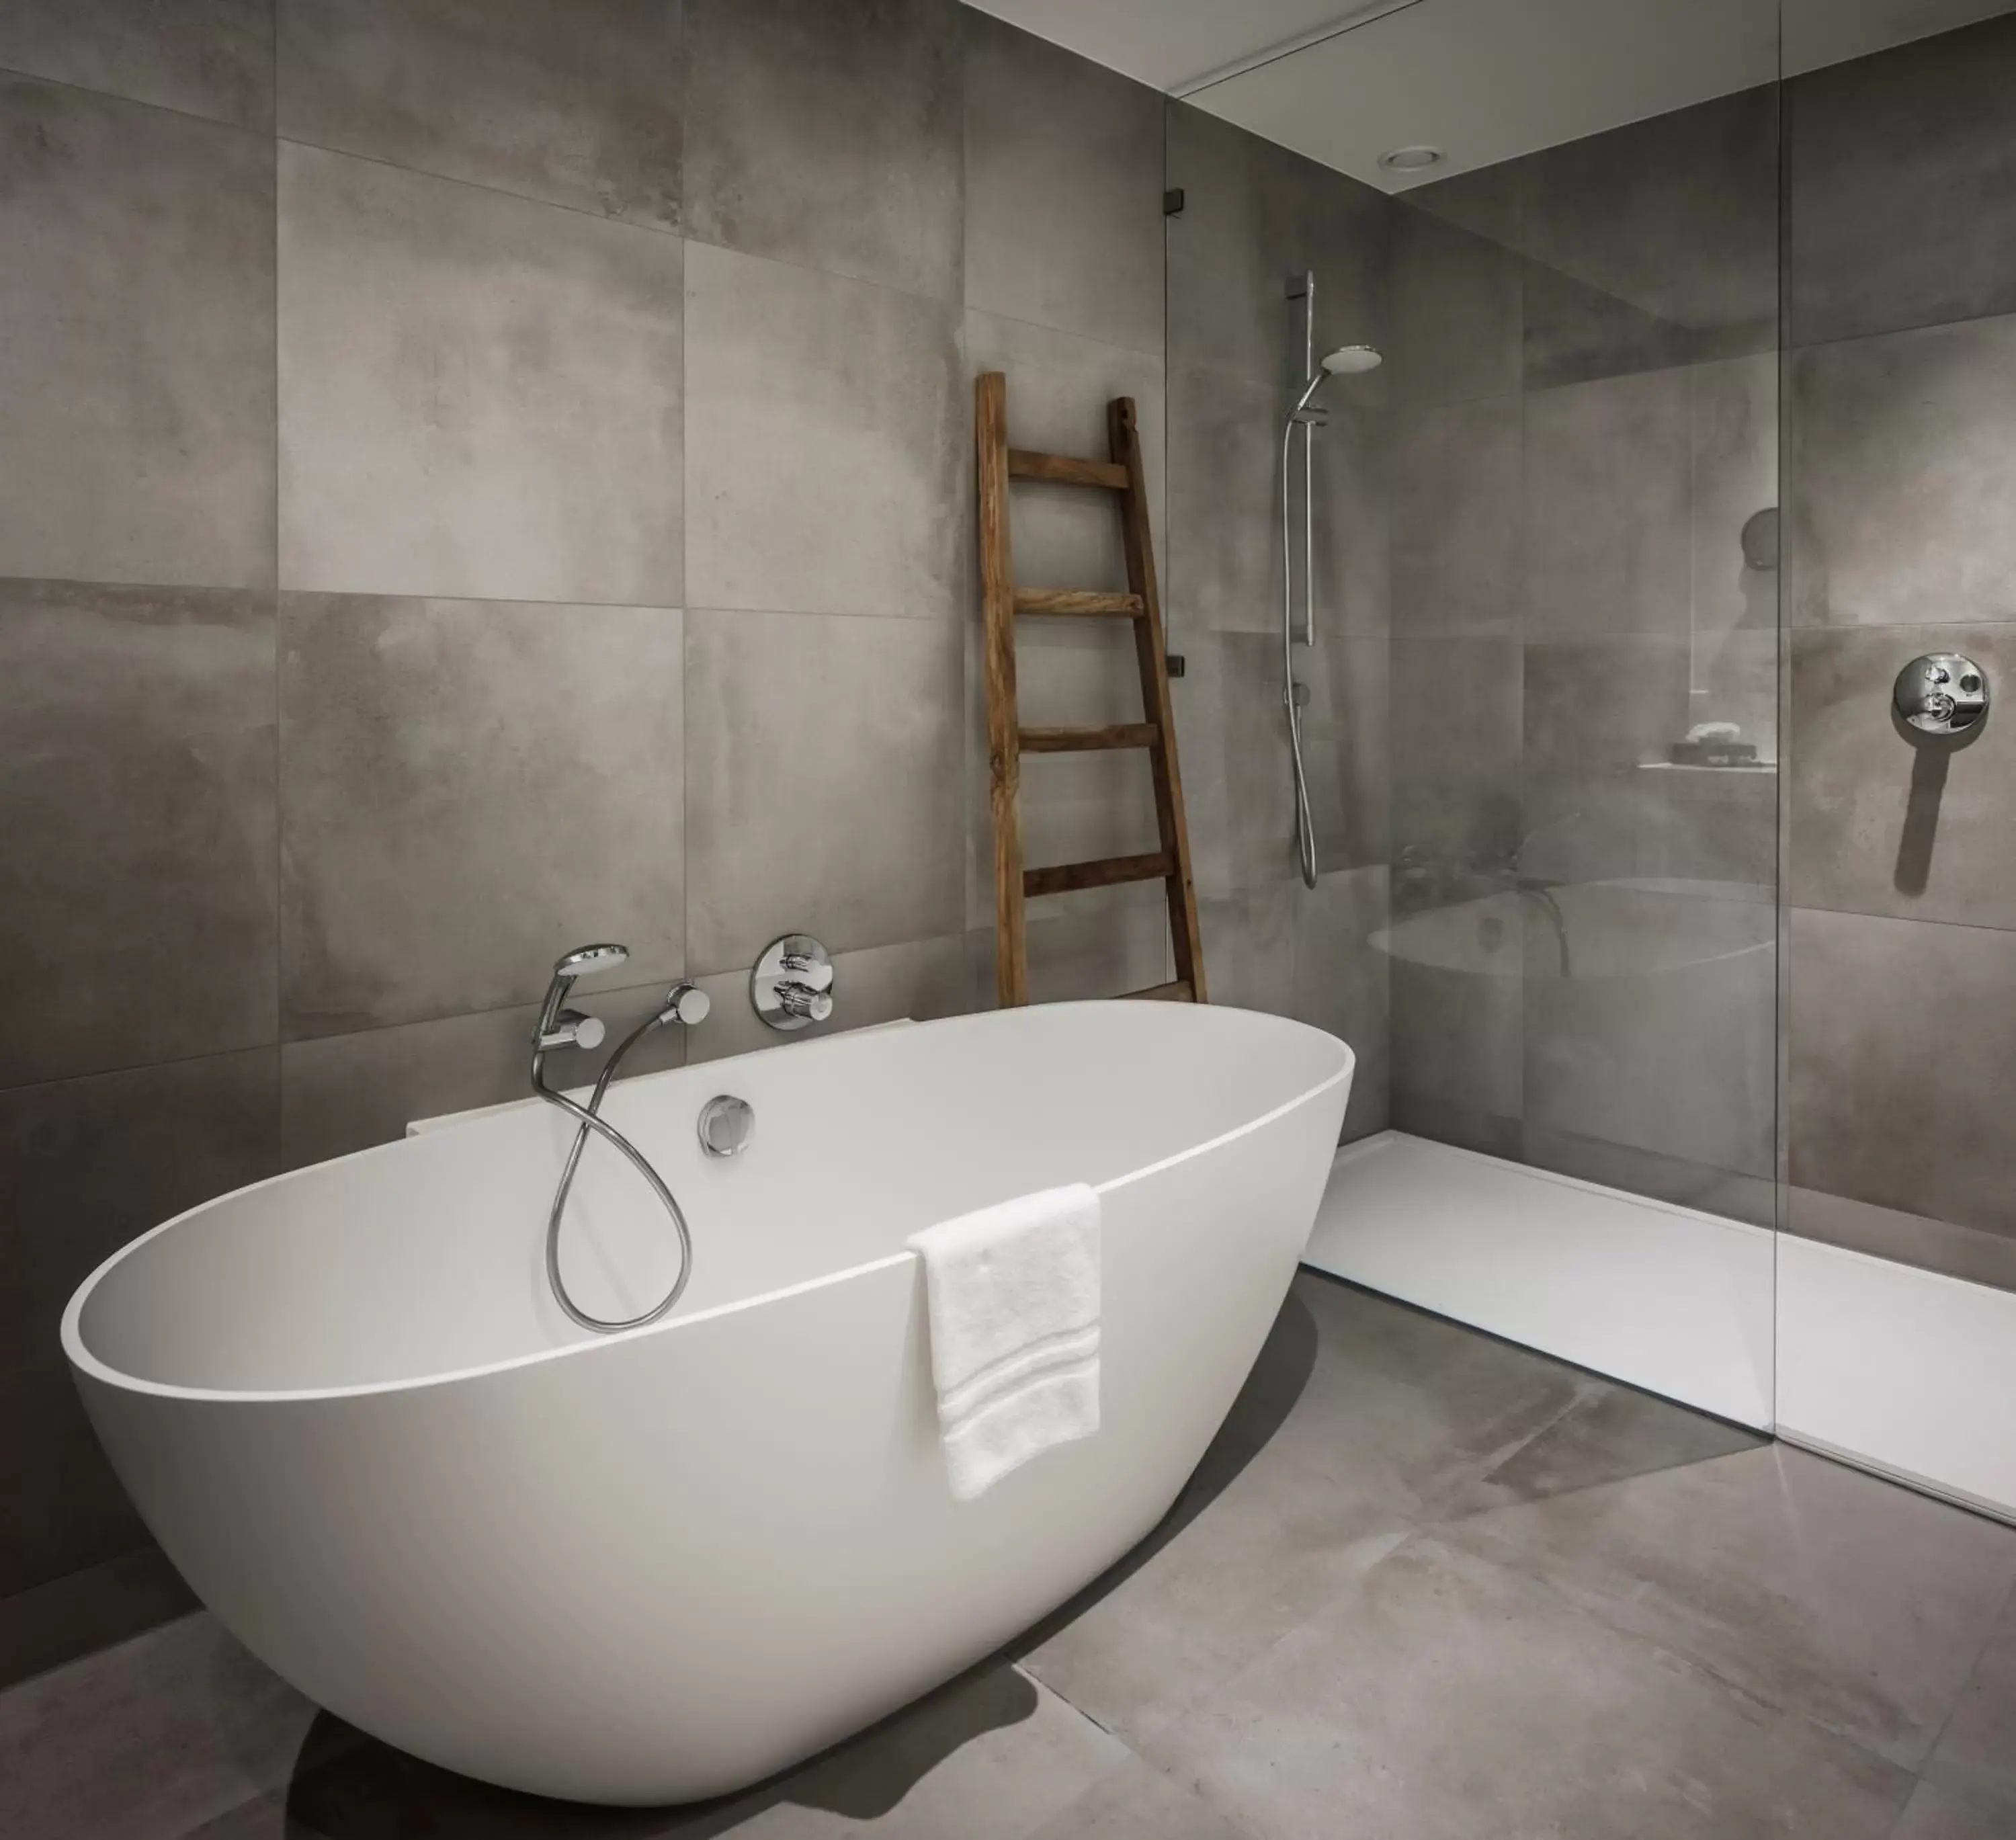 Shower, Bathroom in Van der Valk Hotel Apeldoorn